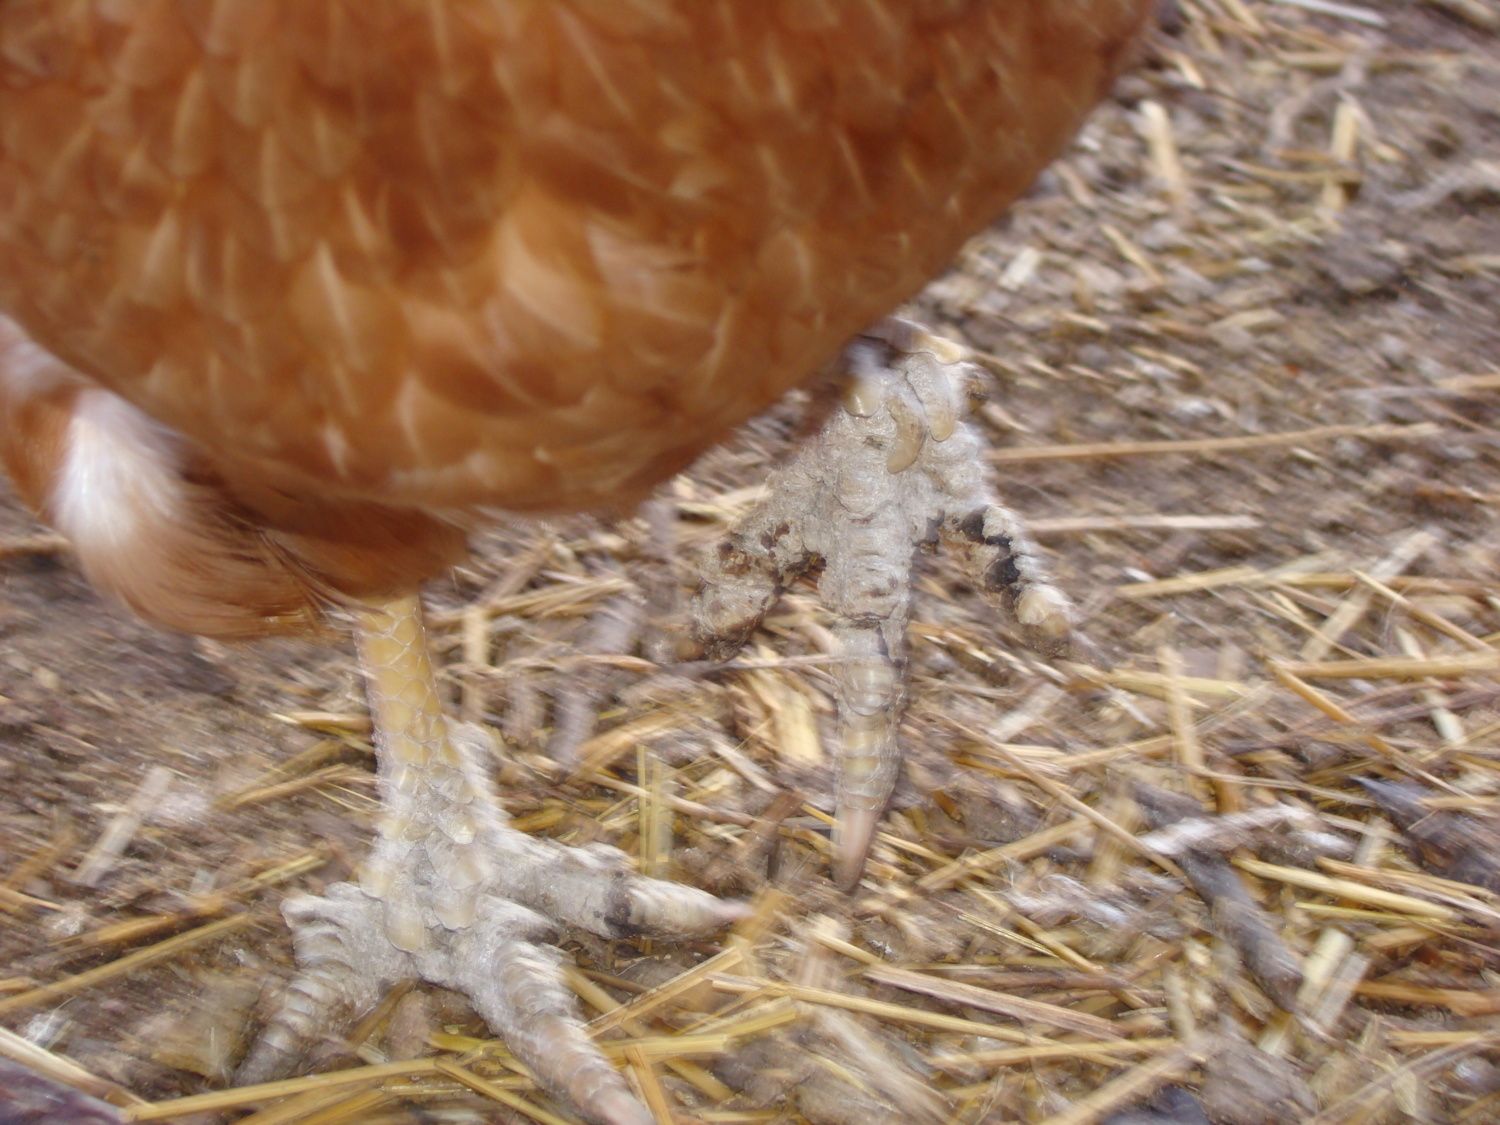 Chicken With Mites